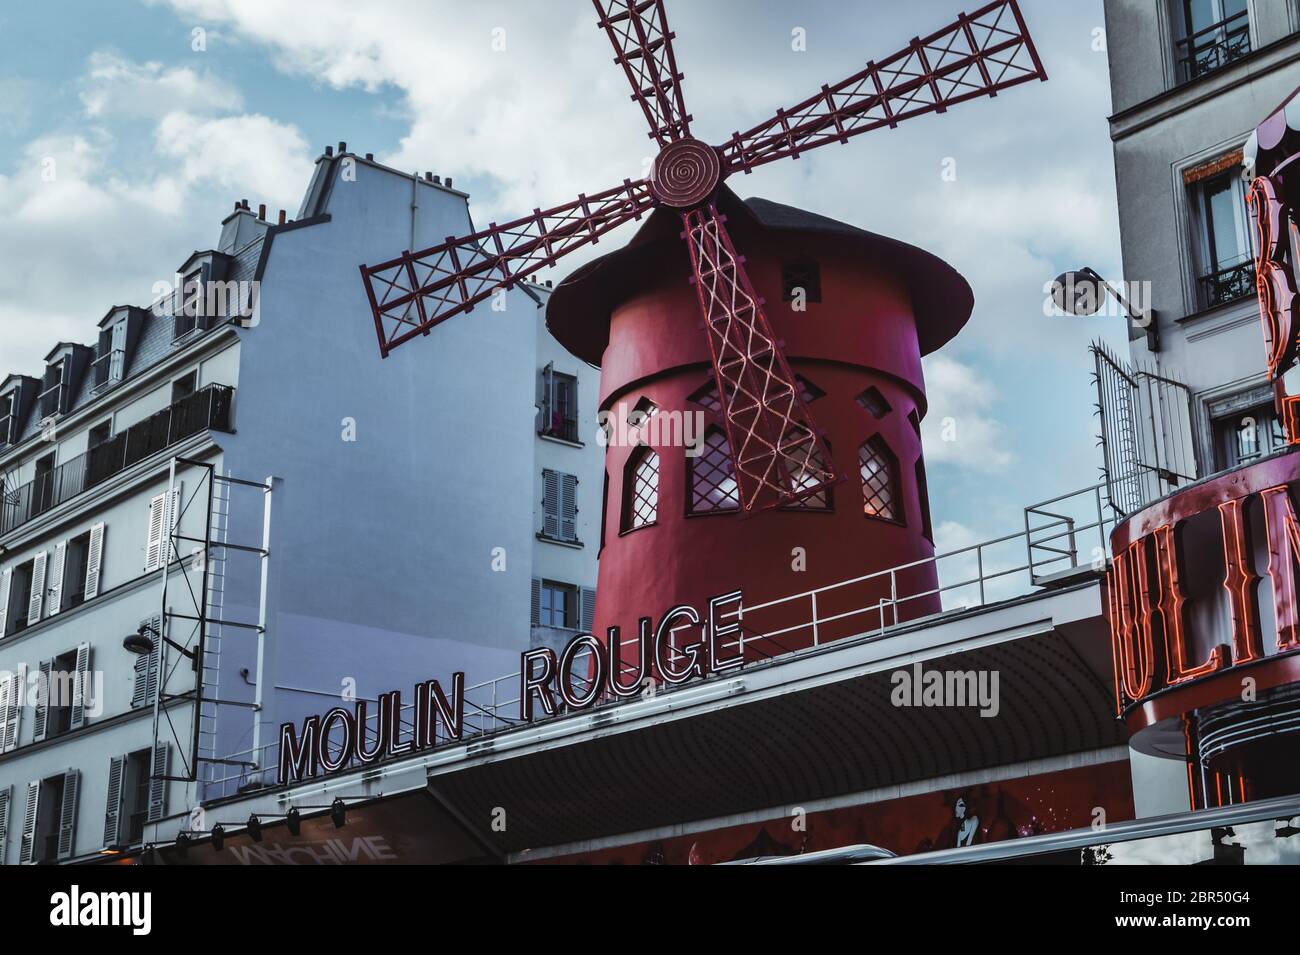 France, Paris, Moulin Rouge : célèbre photographie du Moulin Rouge de paris prise le jour du soleil Banque D'Images